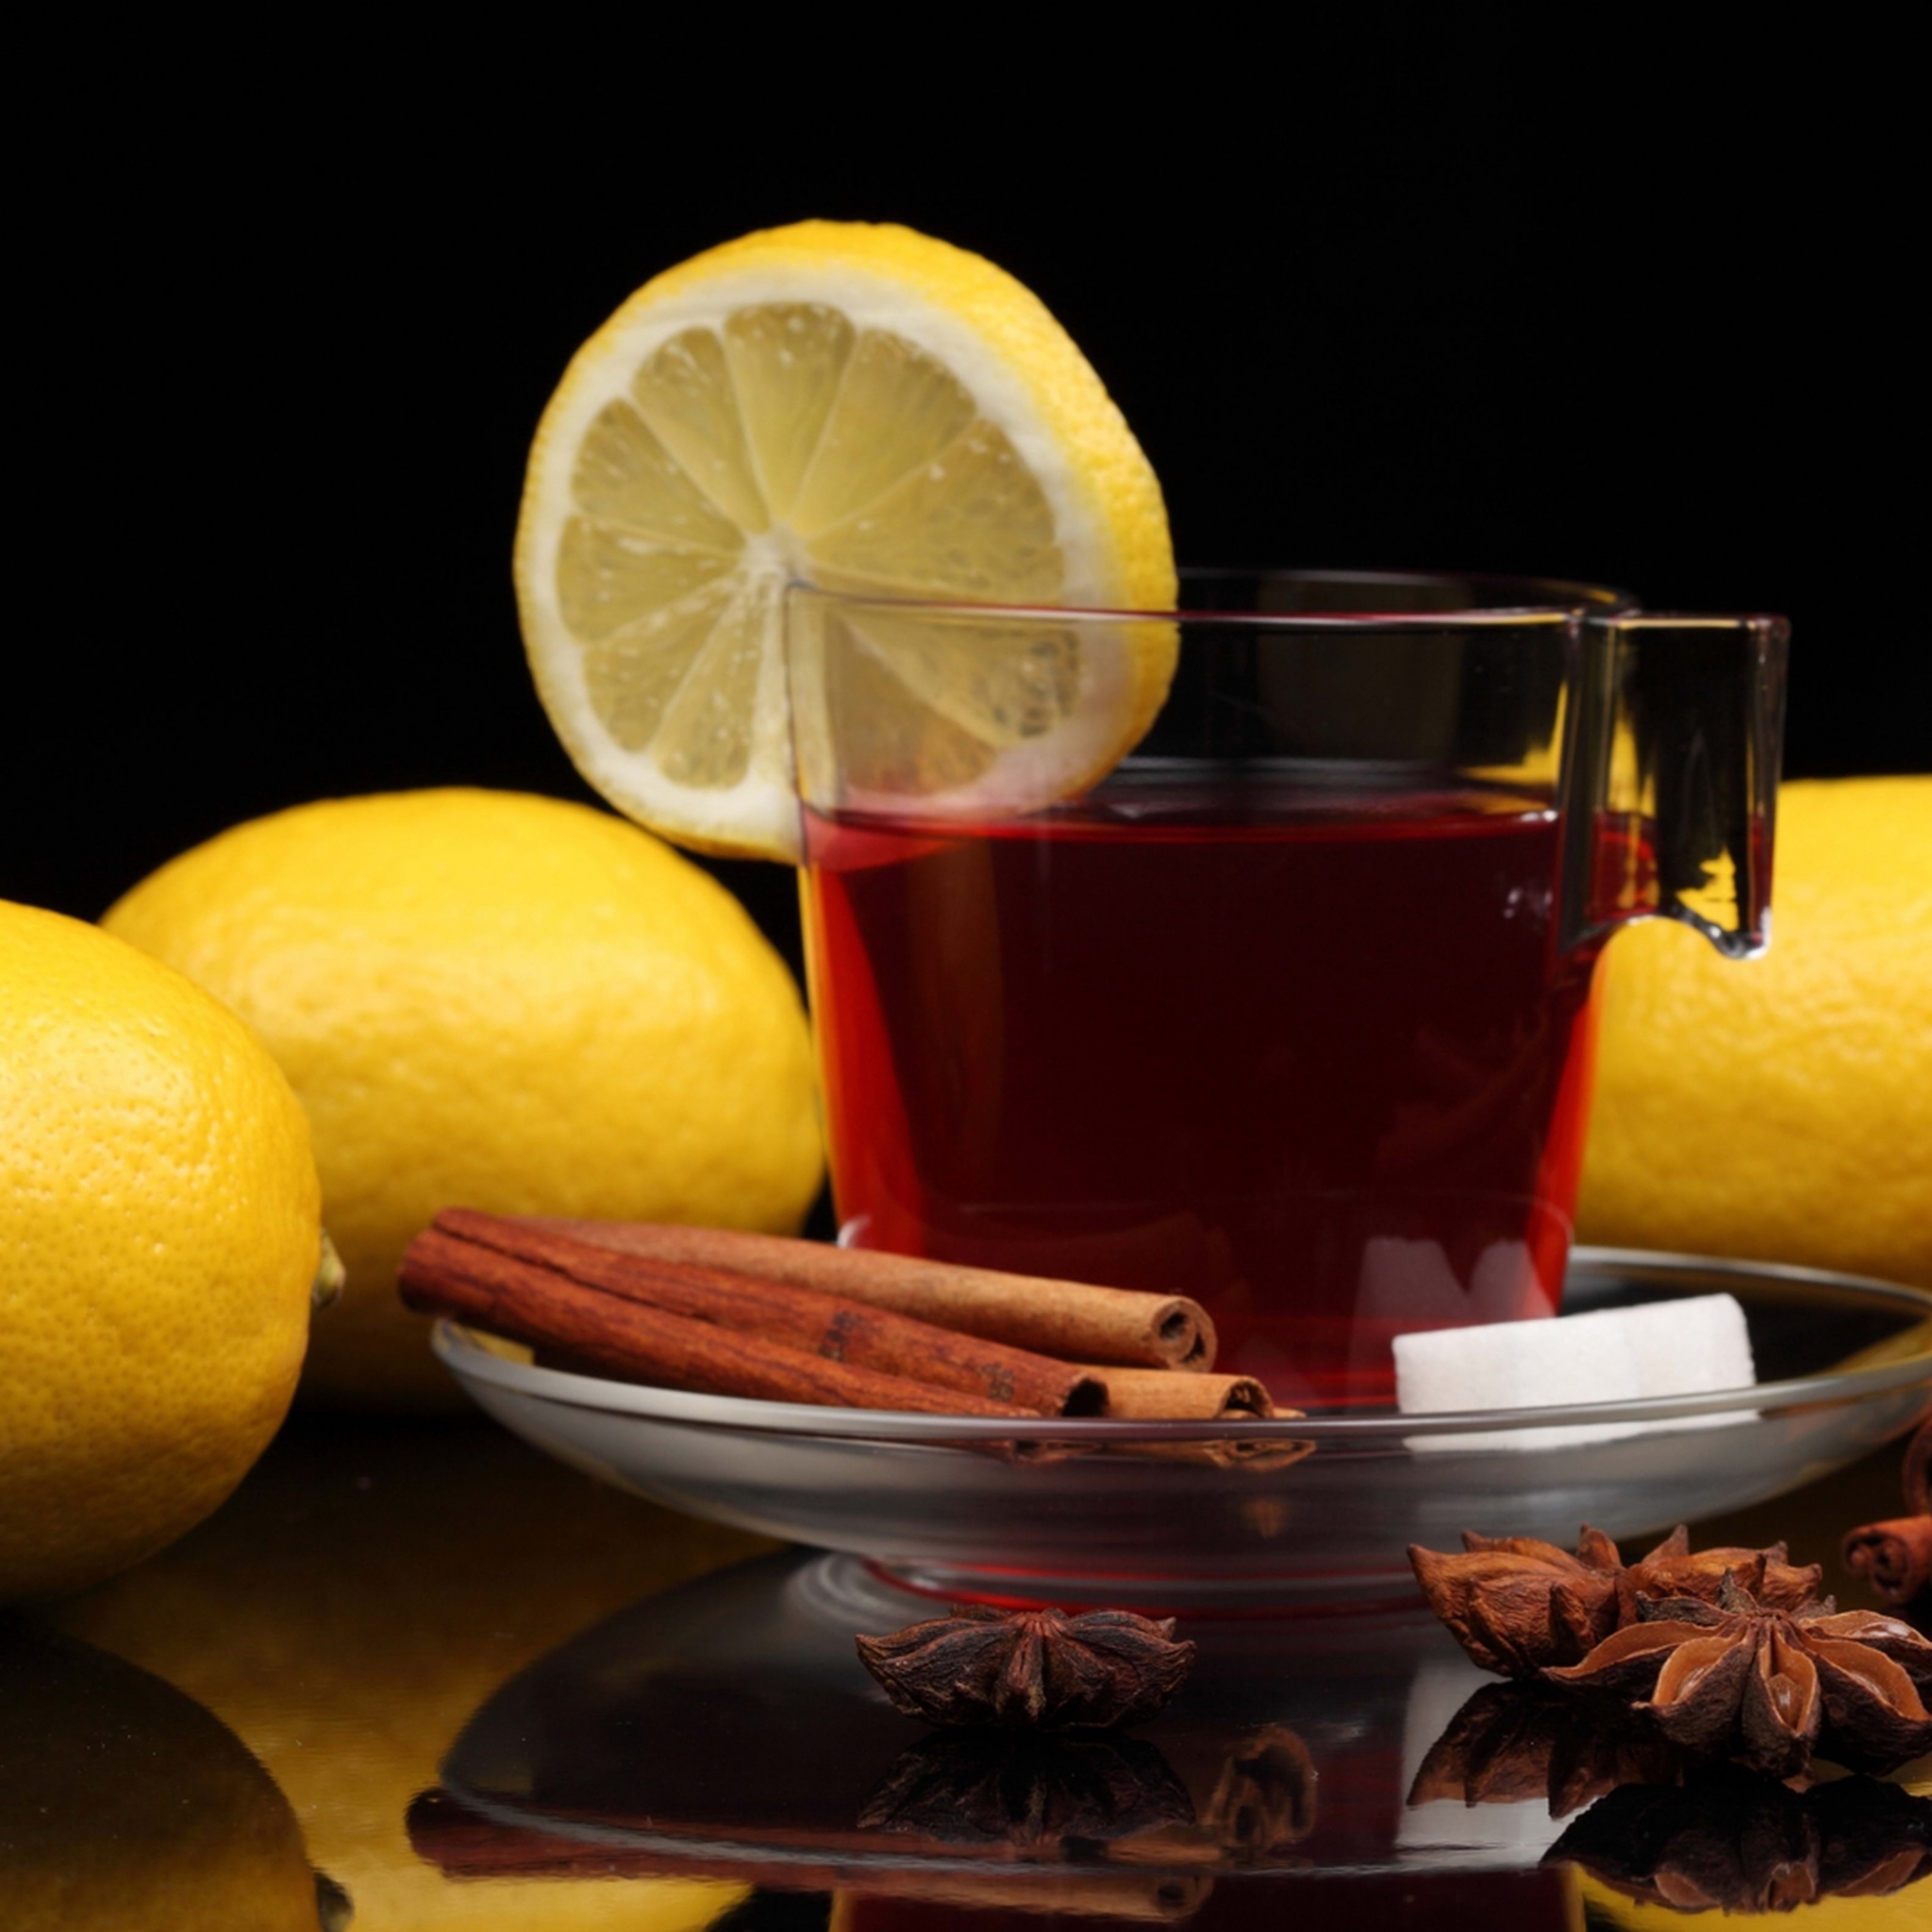 Das Tea with lemon and cinnamon Wallpaper 2048x2048